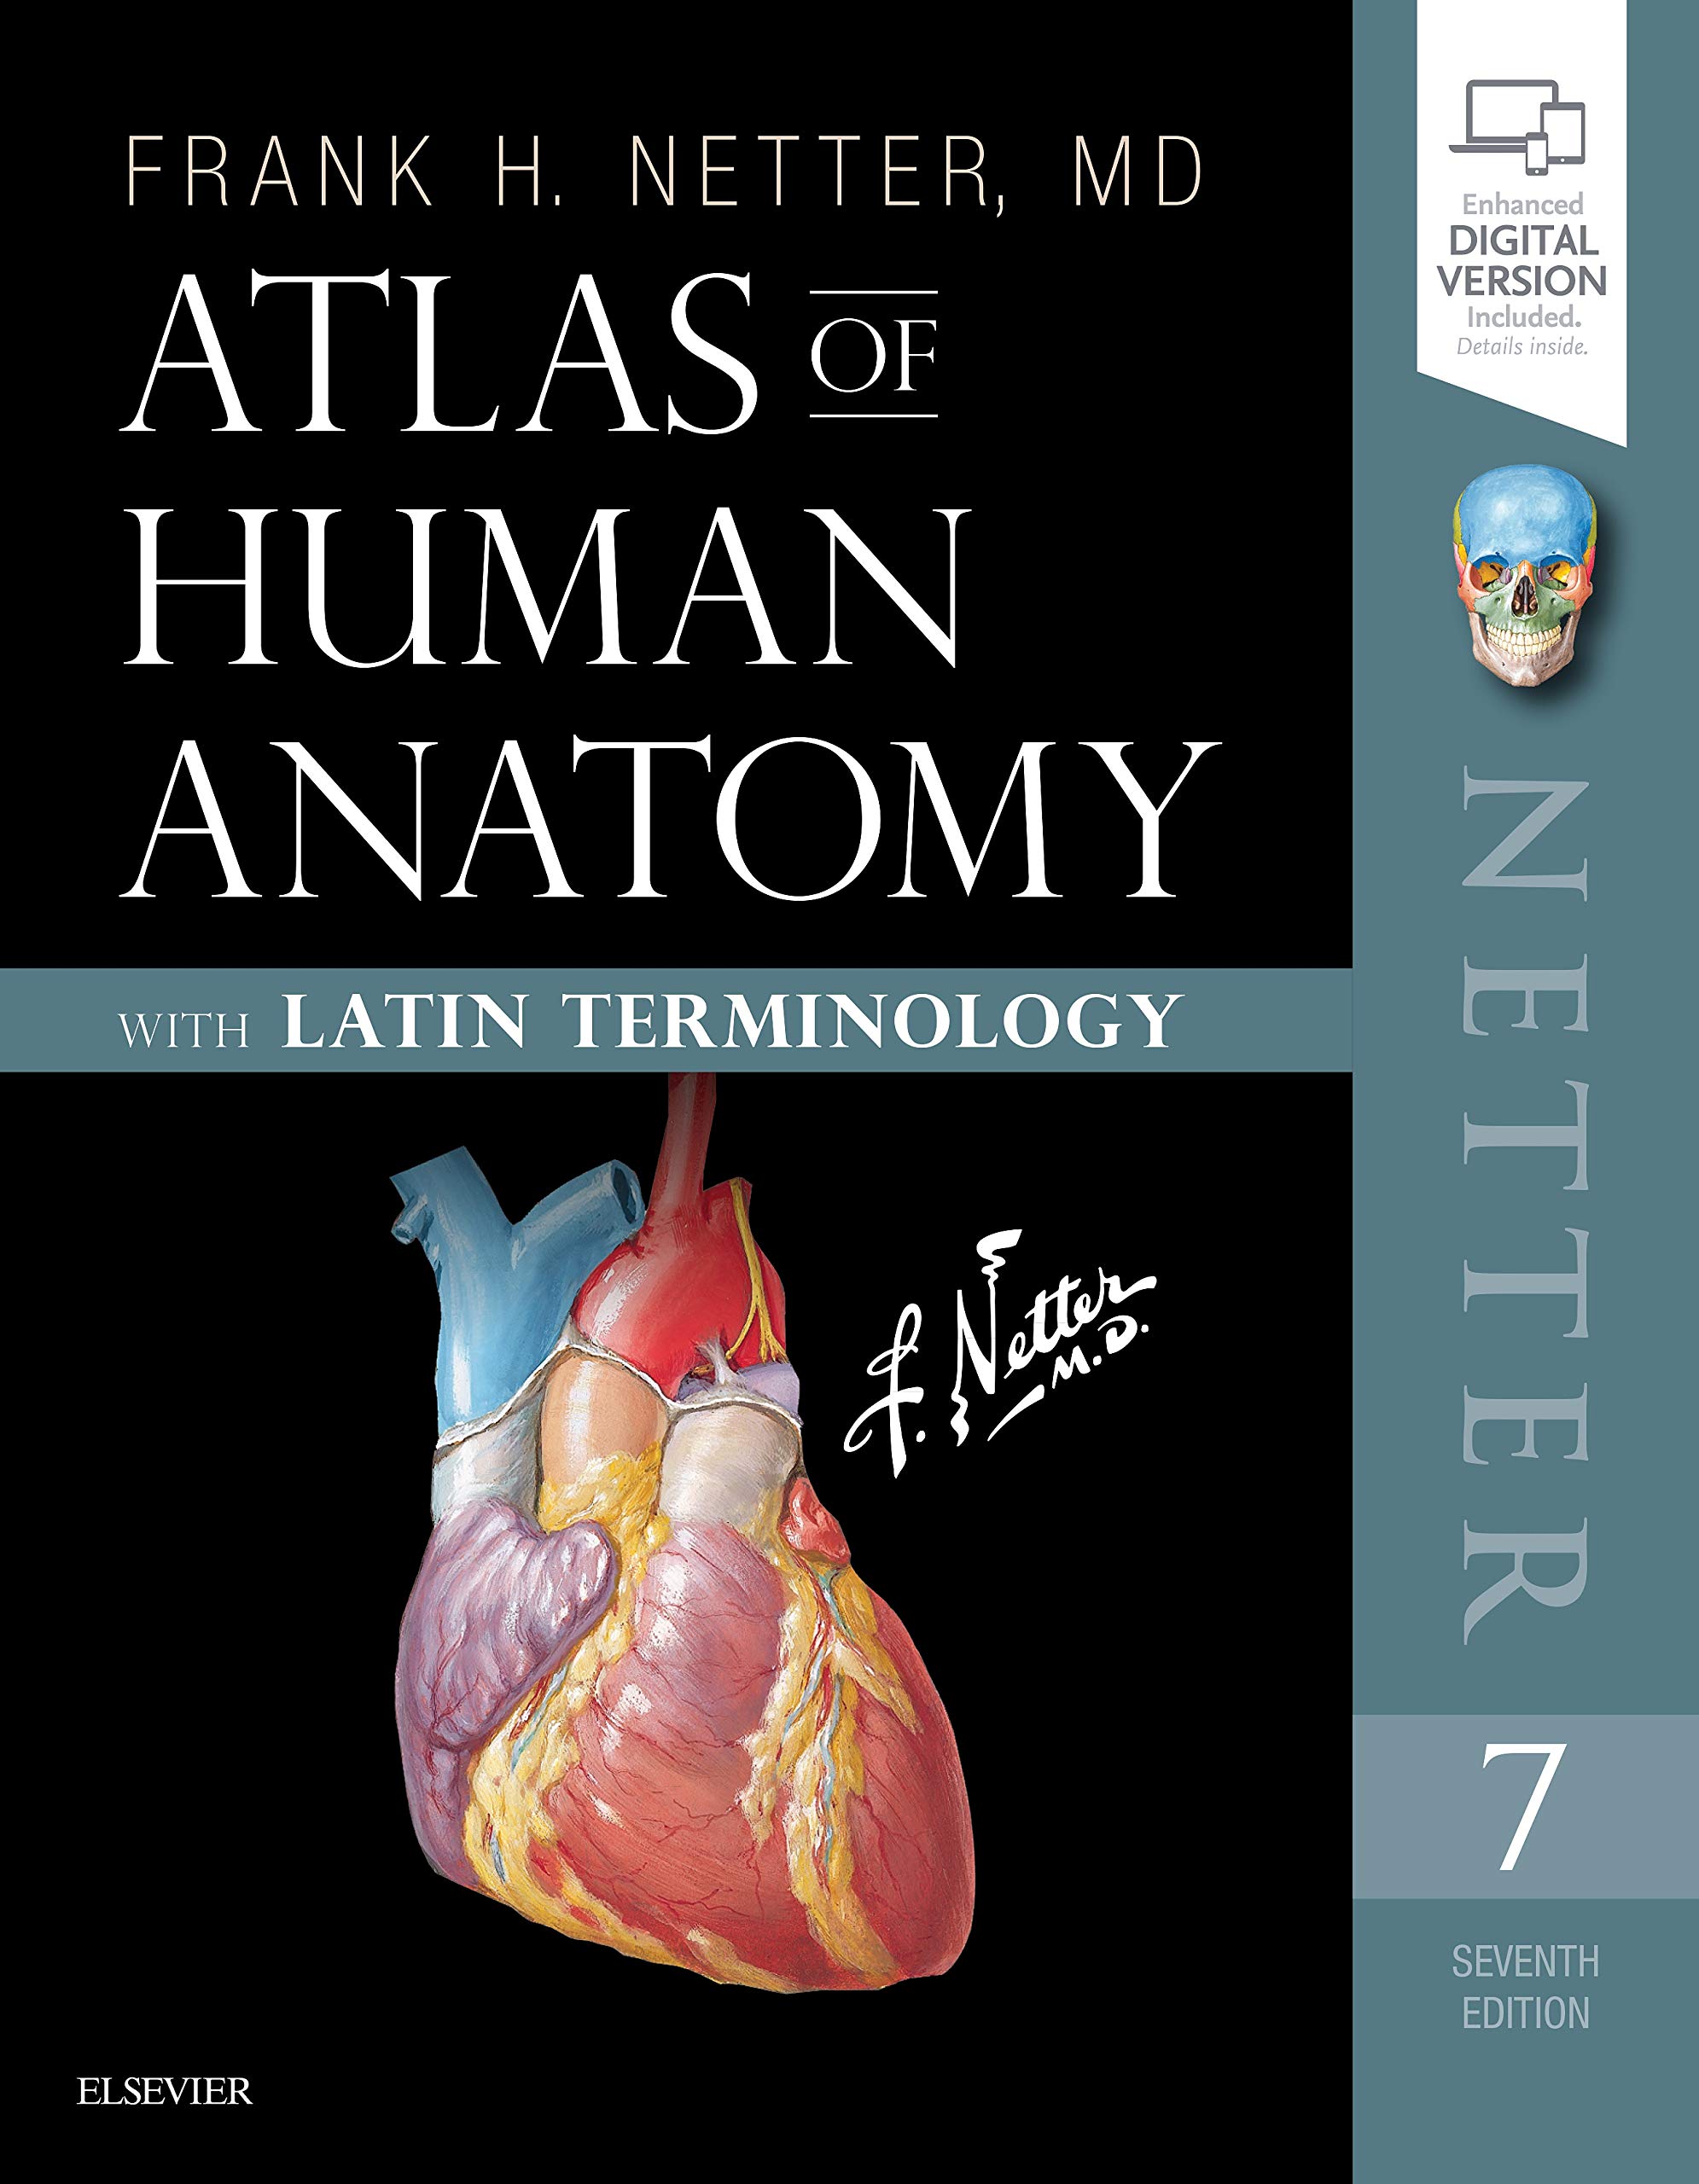 Фрэнк неттер. Атлас анатомии человека Неттера. Атлас анатомии человека Фрэнк Неттер 4 издание. Фрэнк Неттер атлас анатомии человека. Фрэнк Неттер атлас анатомии человека 2003.